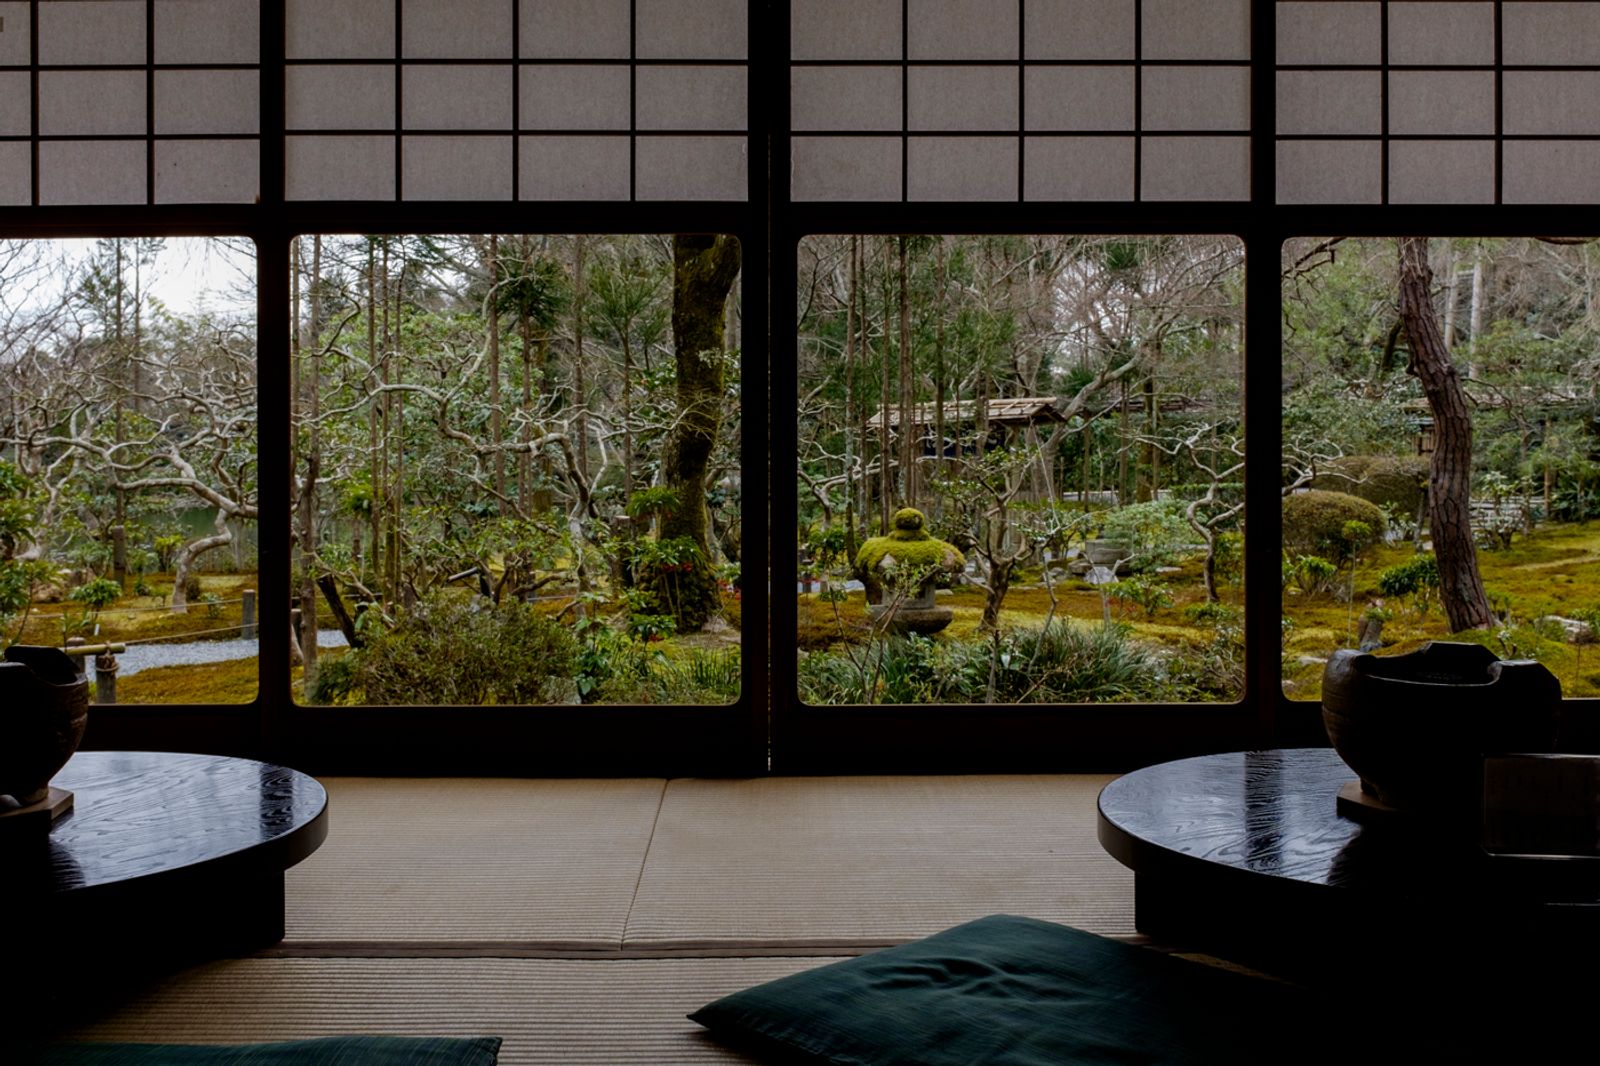 © George Nobechi - In a Tearoom in a Garden, Kyoto